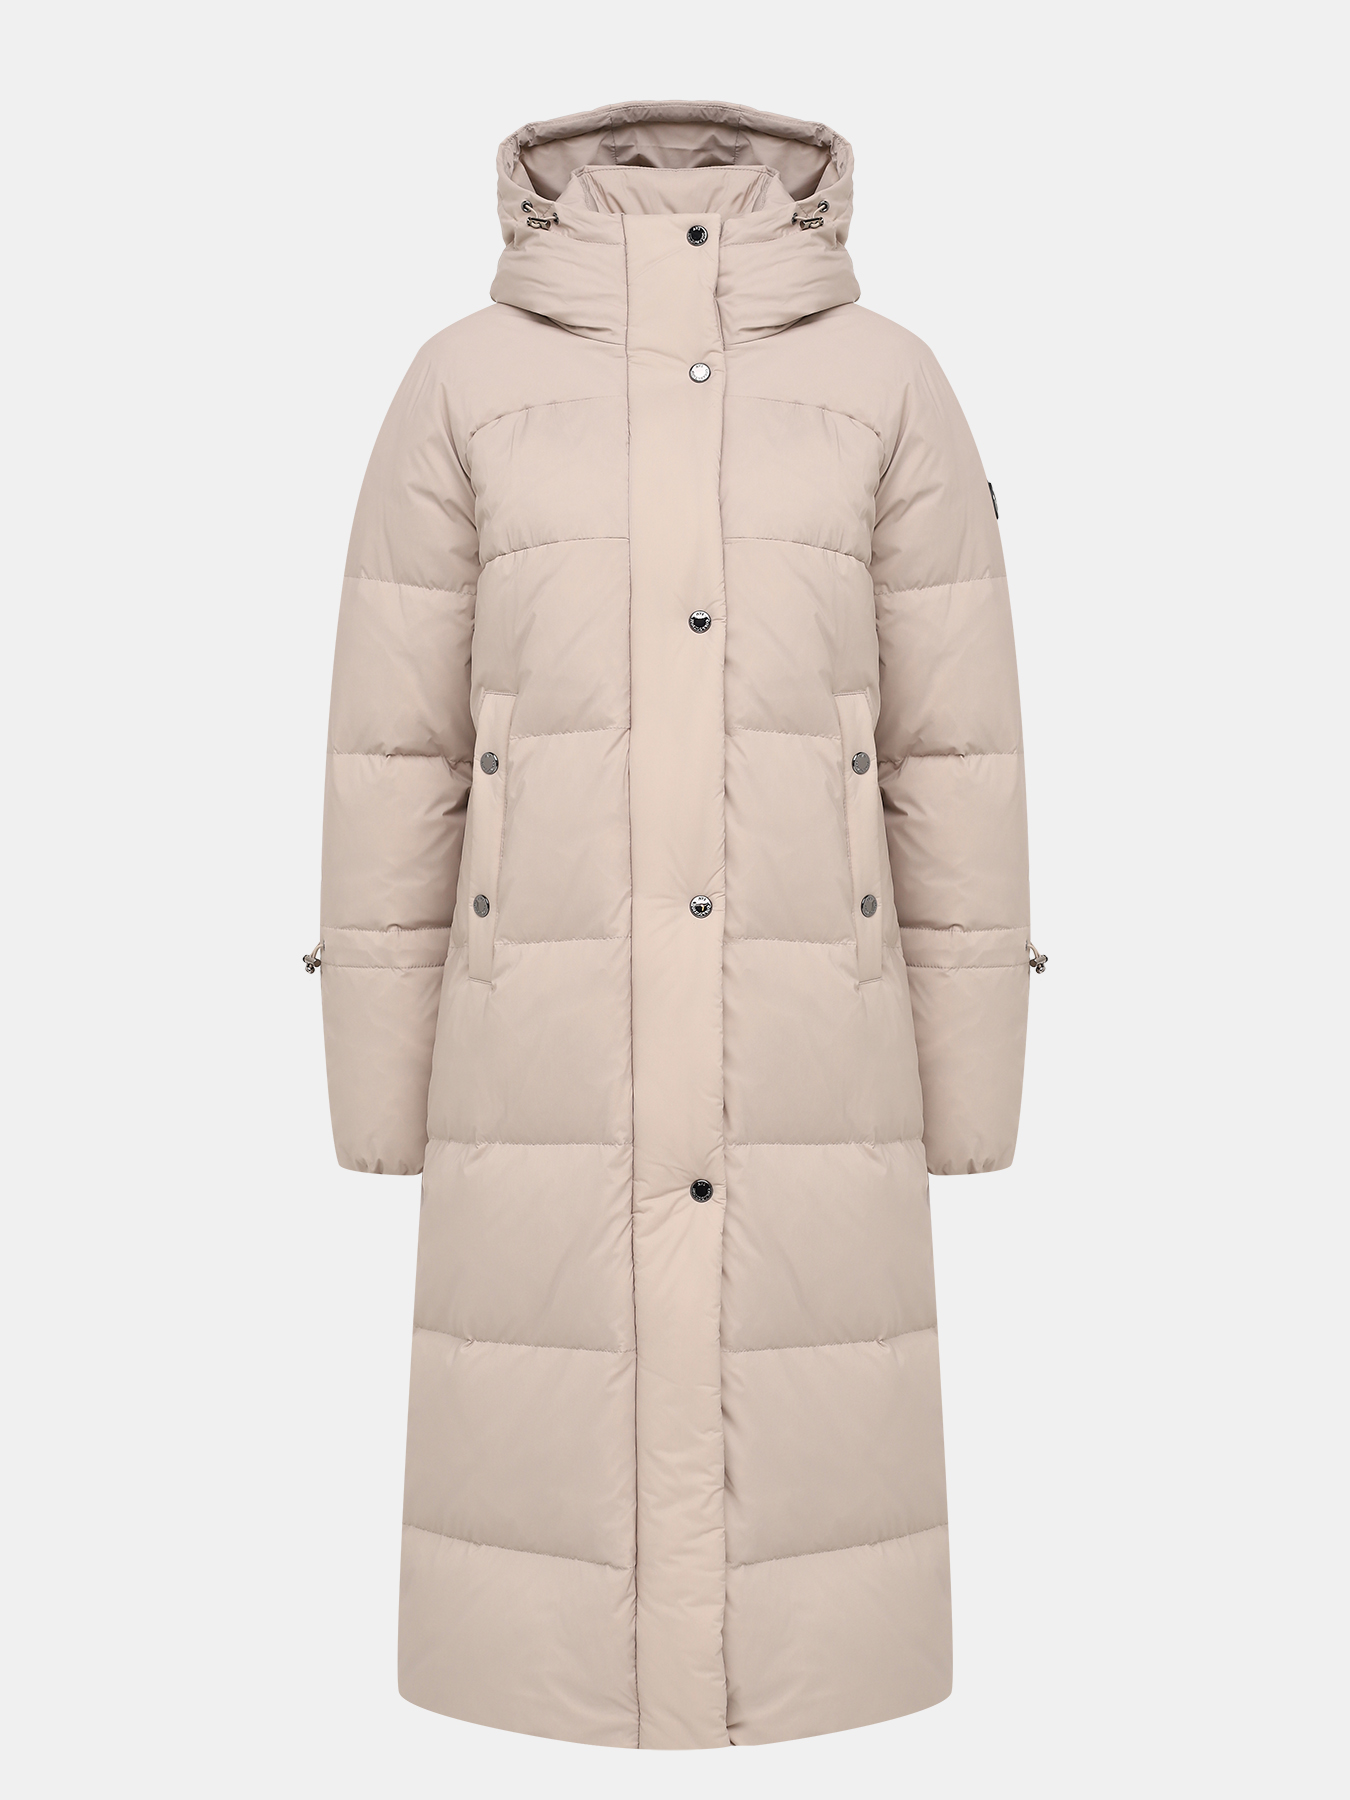 Пальто зимнее AVI 433604-023, цвет бежевый, размер 50